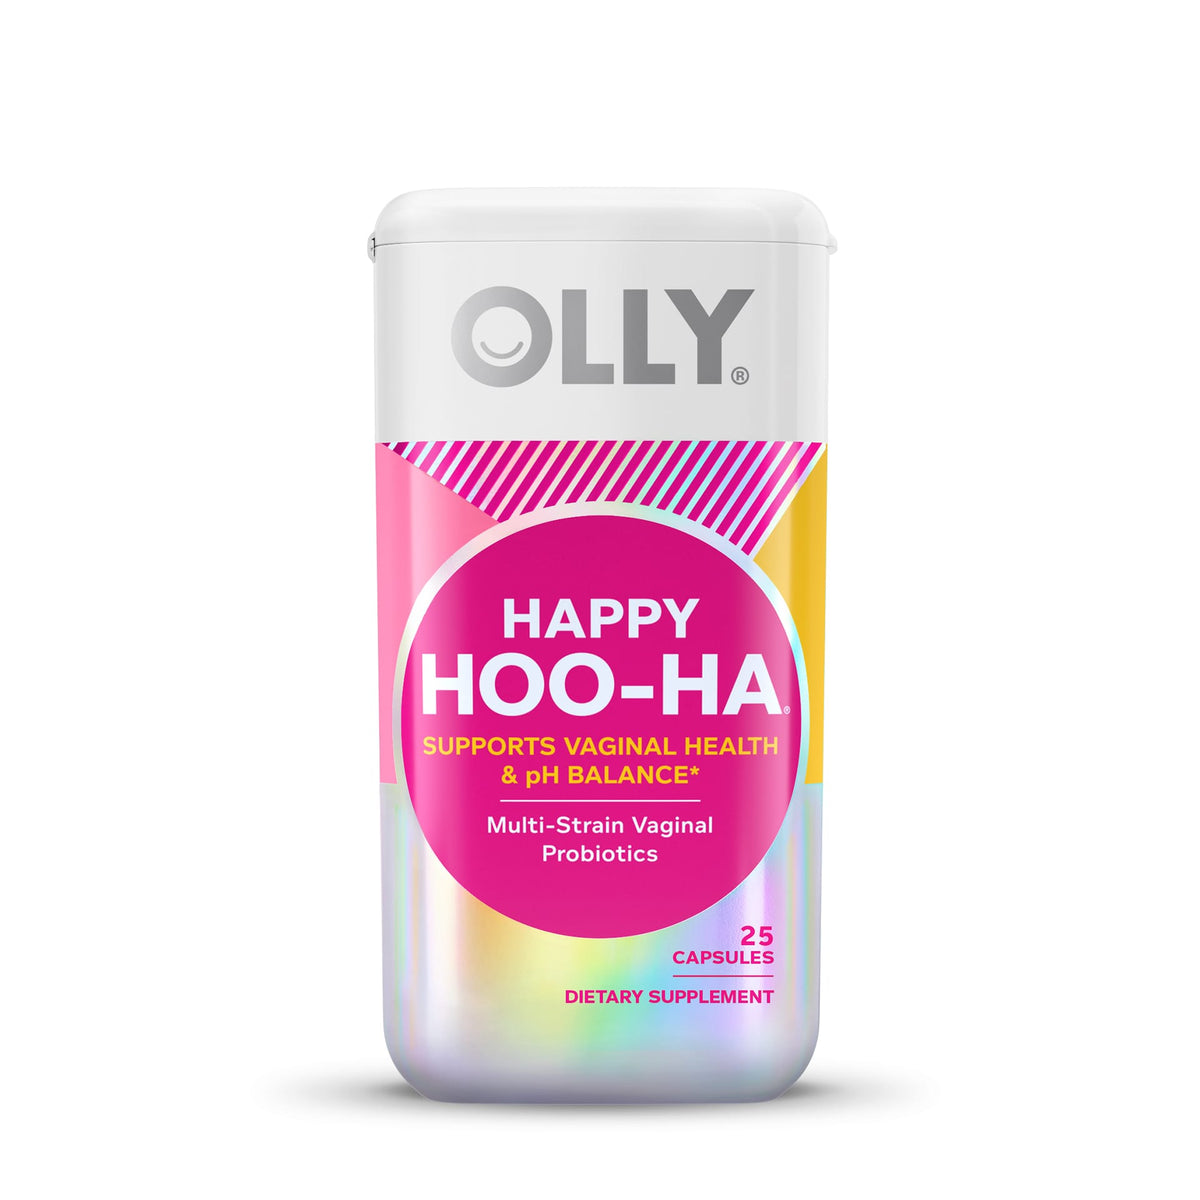 Olly Female-Focused Probiotic, Multi-Strain, Happy Hoo-Ha, Capsules - 25 capsules